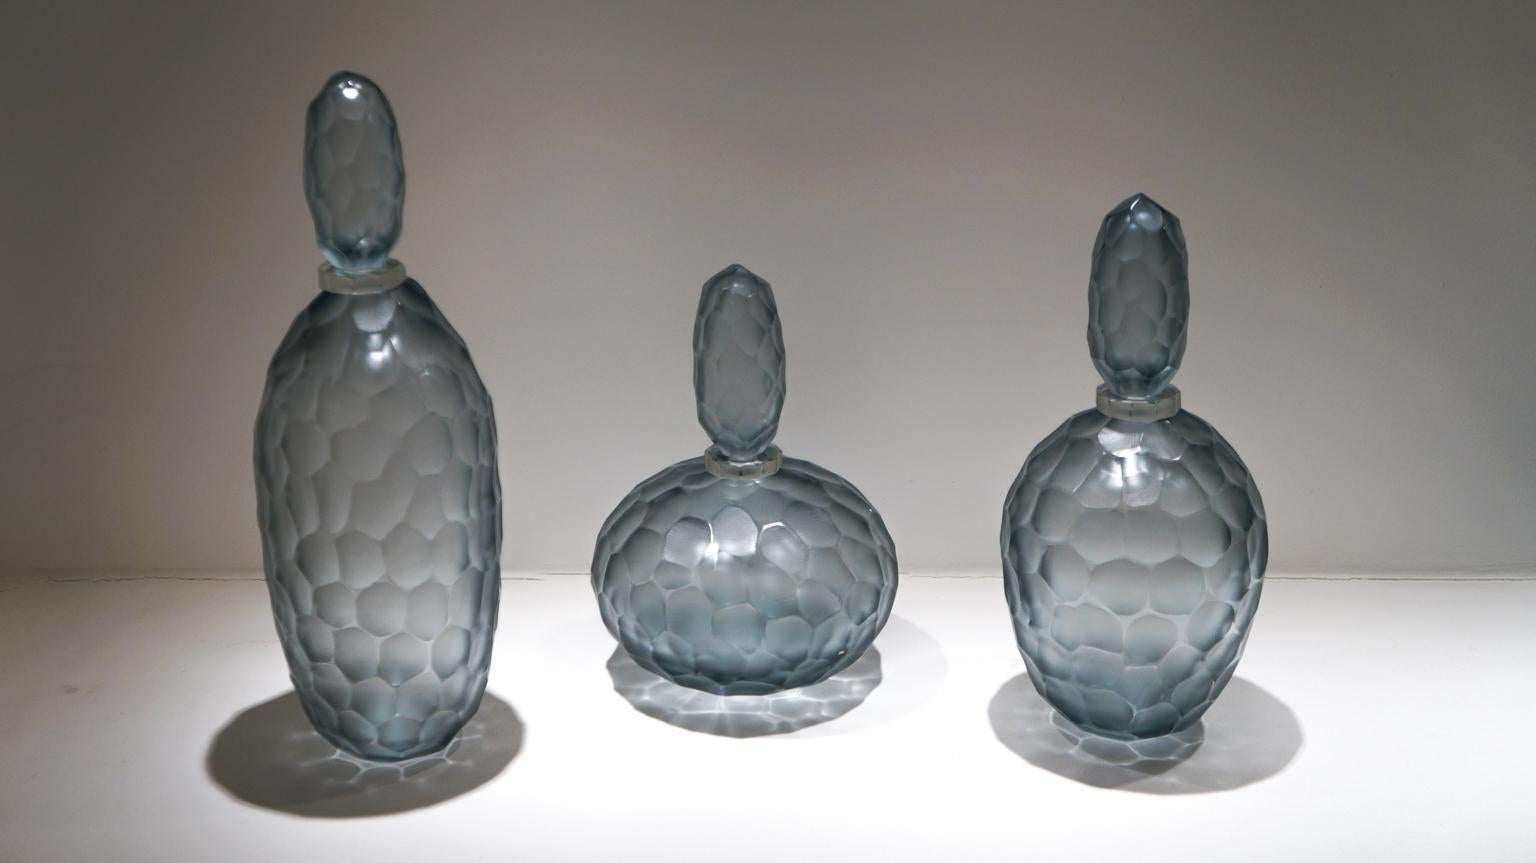 Drei vollständig von Hand gravierte Flaschen aus grauem mundgeblasenem Muranoglas.
Um diese Arbeit auszuführen, sind zwei verschiedene Prozesse erforderlich: Der erste besteht darin, die heiße Vase zu modellieren und ihr Form und Farbe zu geben.